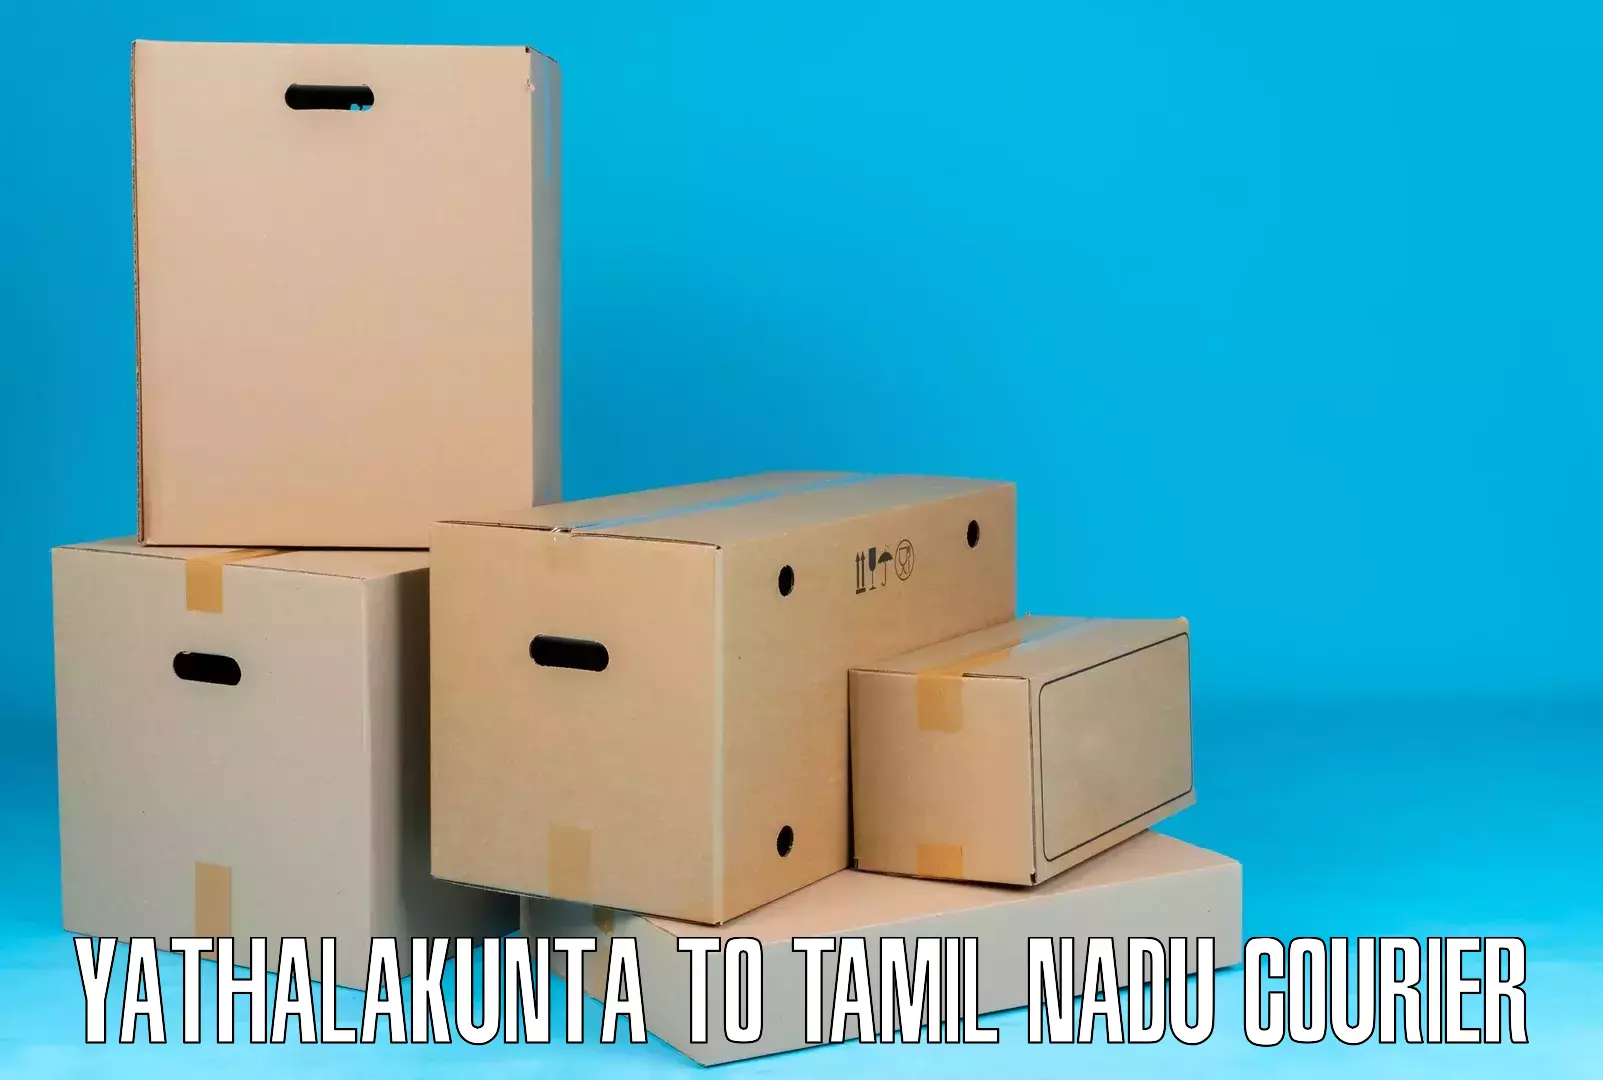 Efficient parcel tracking Yathalakunta to Palayankottai